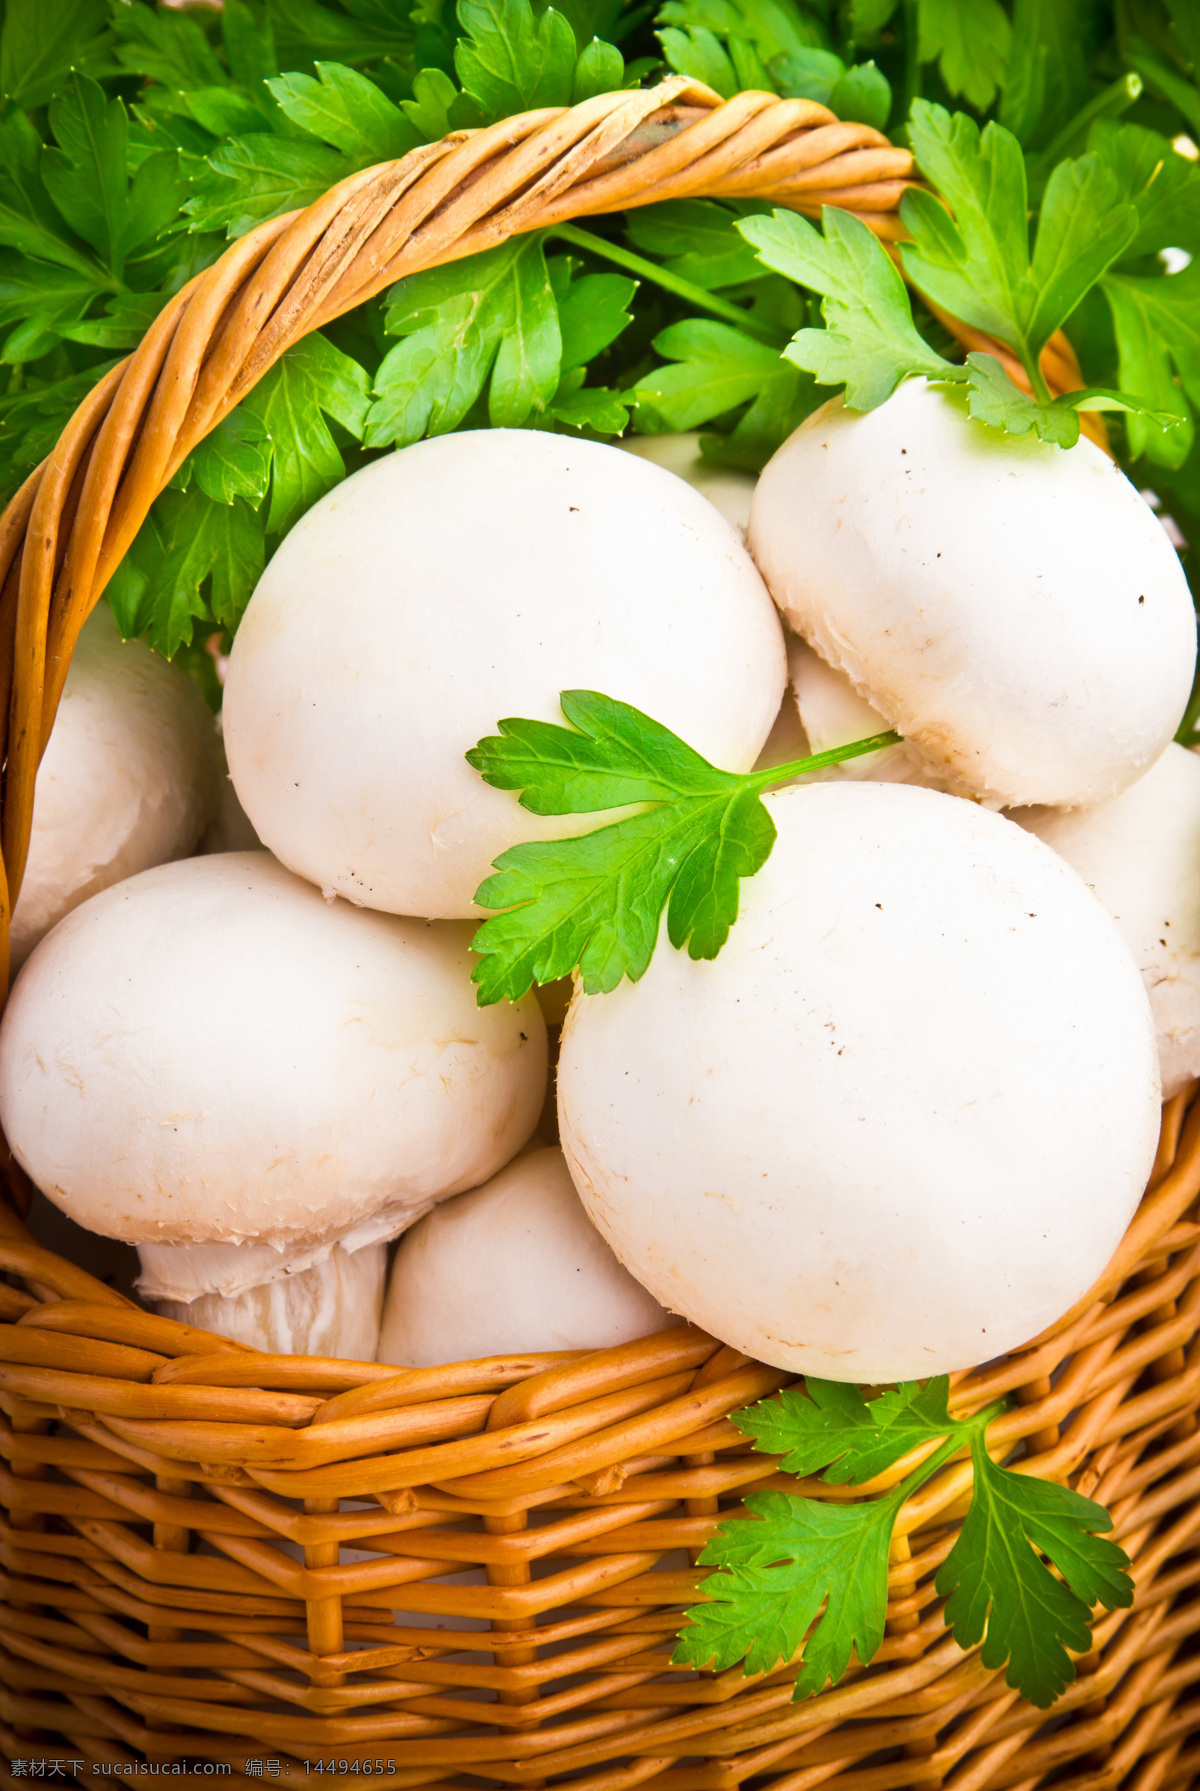 高清蘑菇摄影 蘑菇 蘑菇素材 蘑菇摄影 美食 食物 篮子 蔬菜 水果蔬菜 餐饮美食 白色